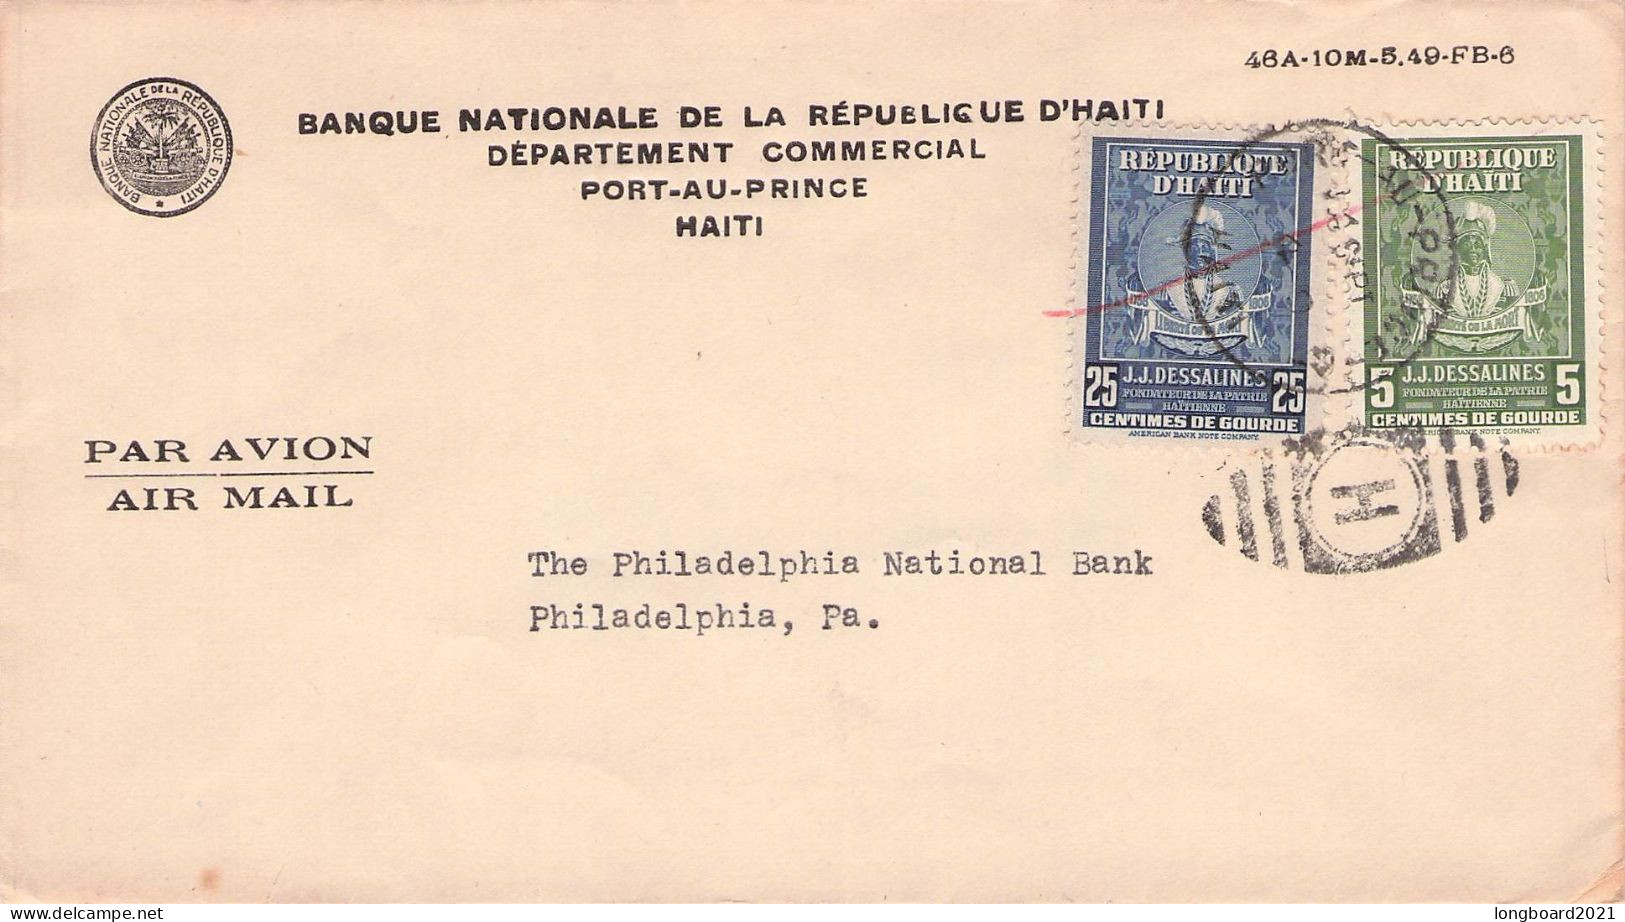 HAITI - AIR MAIL 1949 PORT-AU-PRINCE - PHILADELPHIA / 7073 - Haití